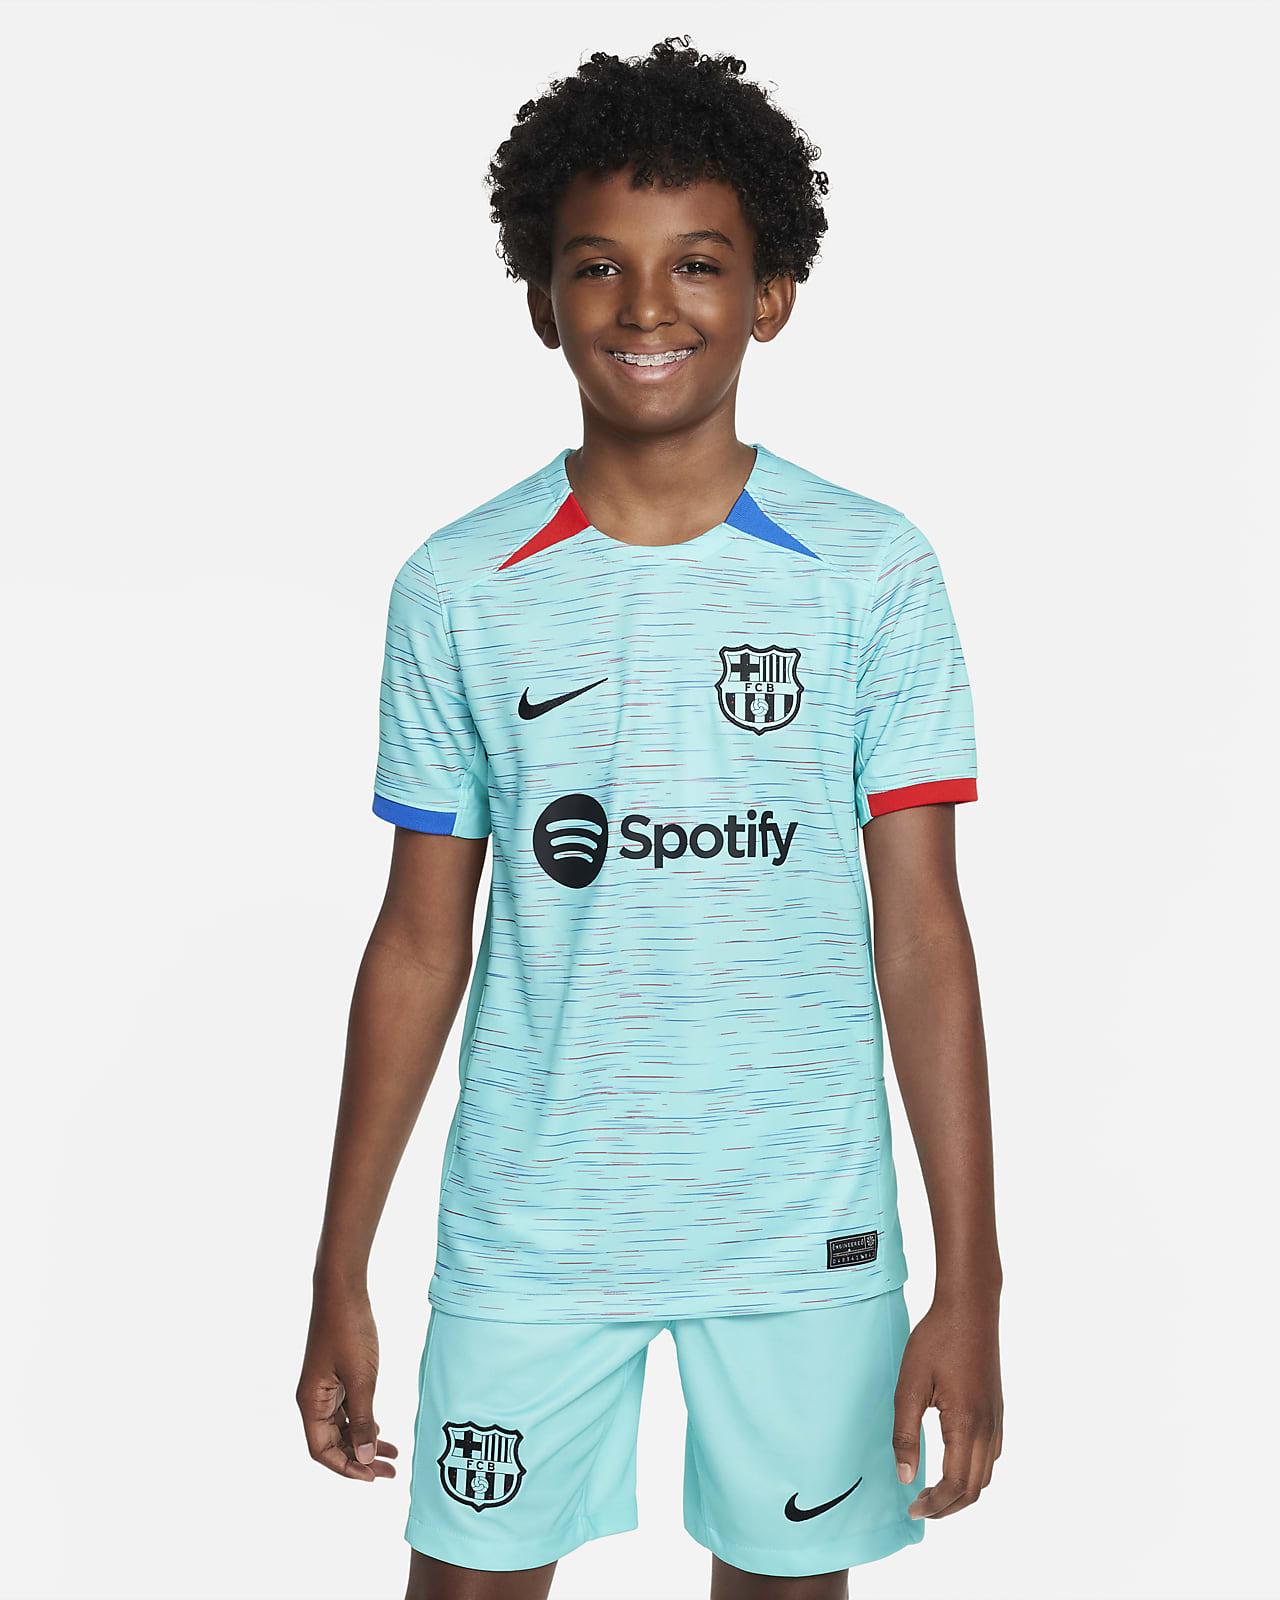 Ποδοσφαιρική φανέλα Nike Dri-FIT εναλλακτικής εμφάνισης Μπαρτσελόνα 2023/24 Stadium για μεγάλα παιδιά